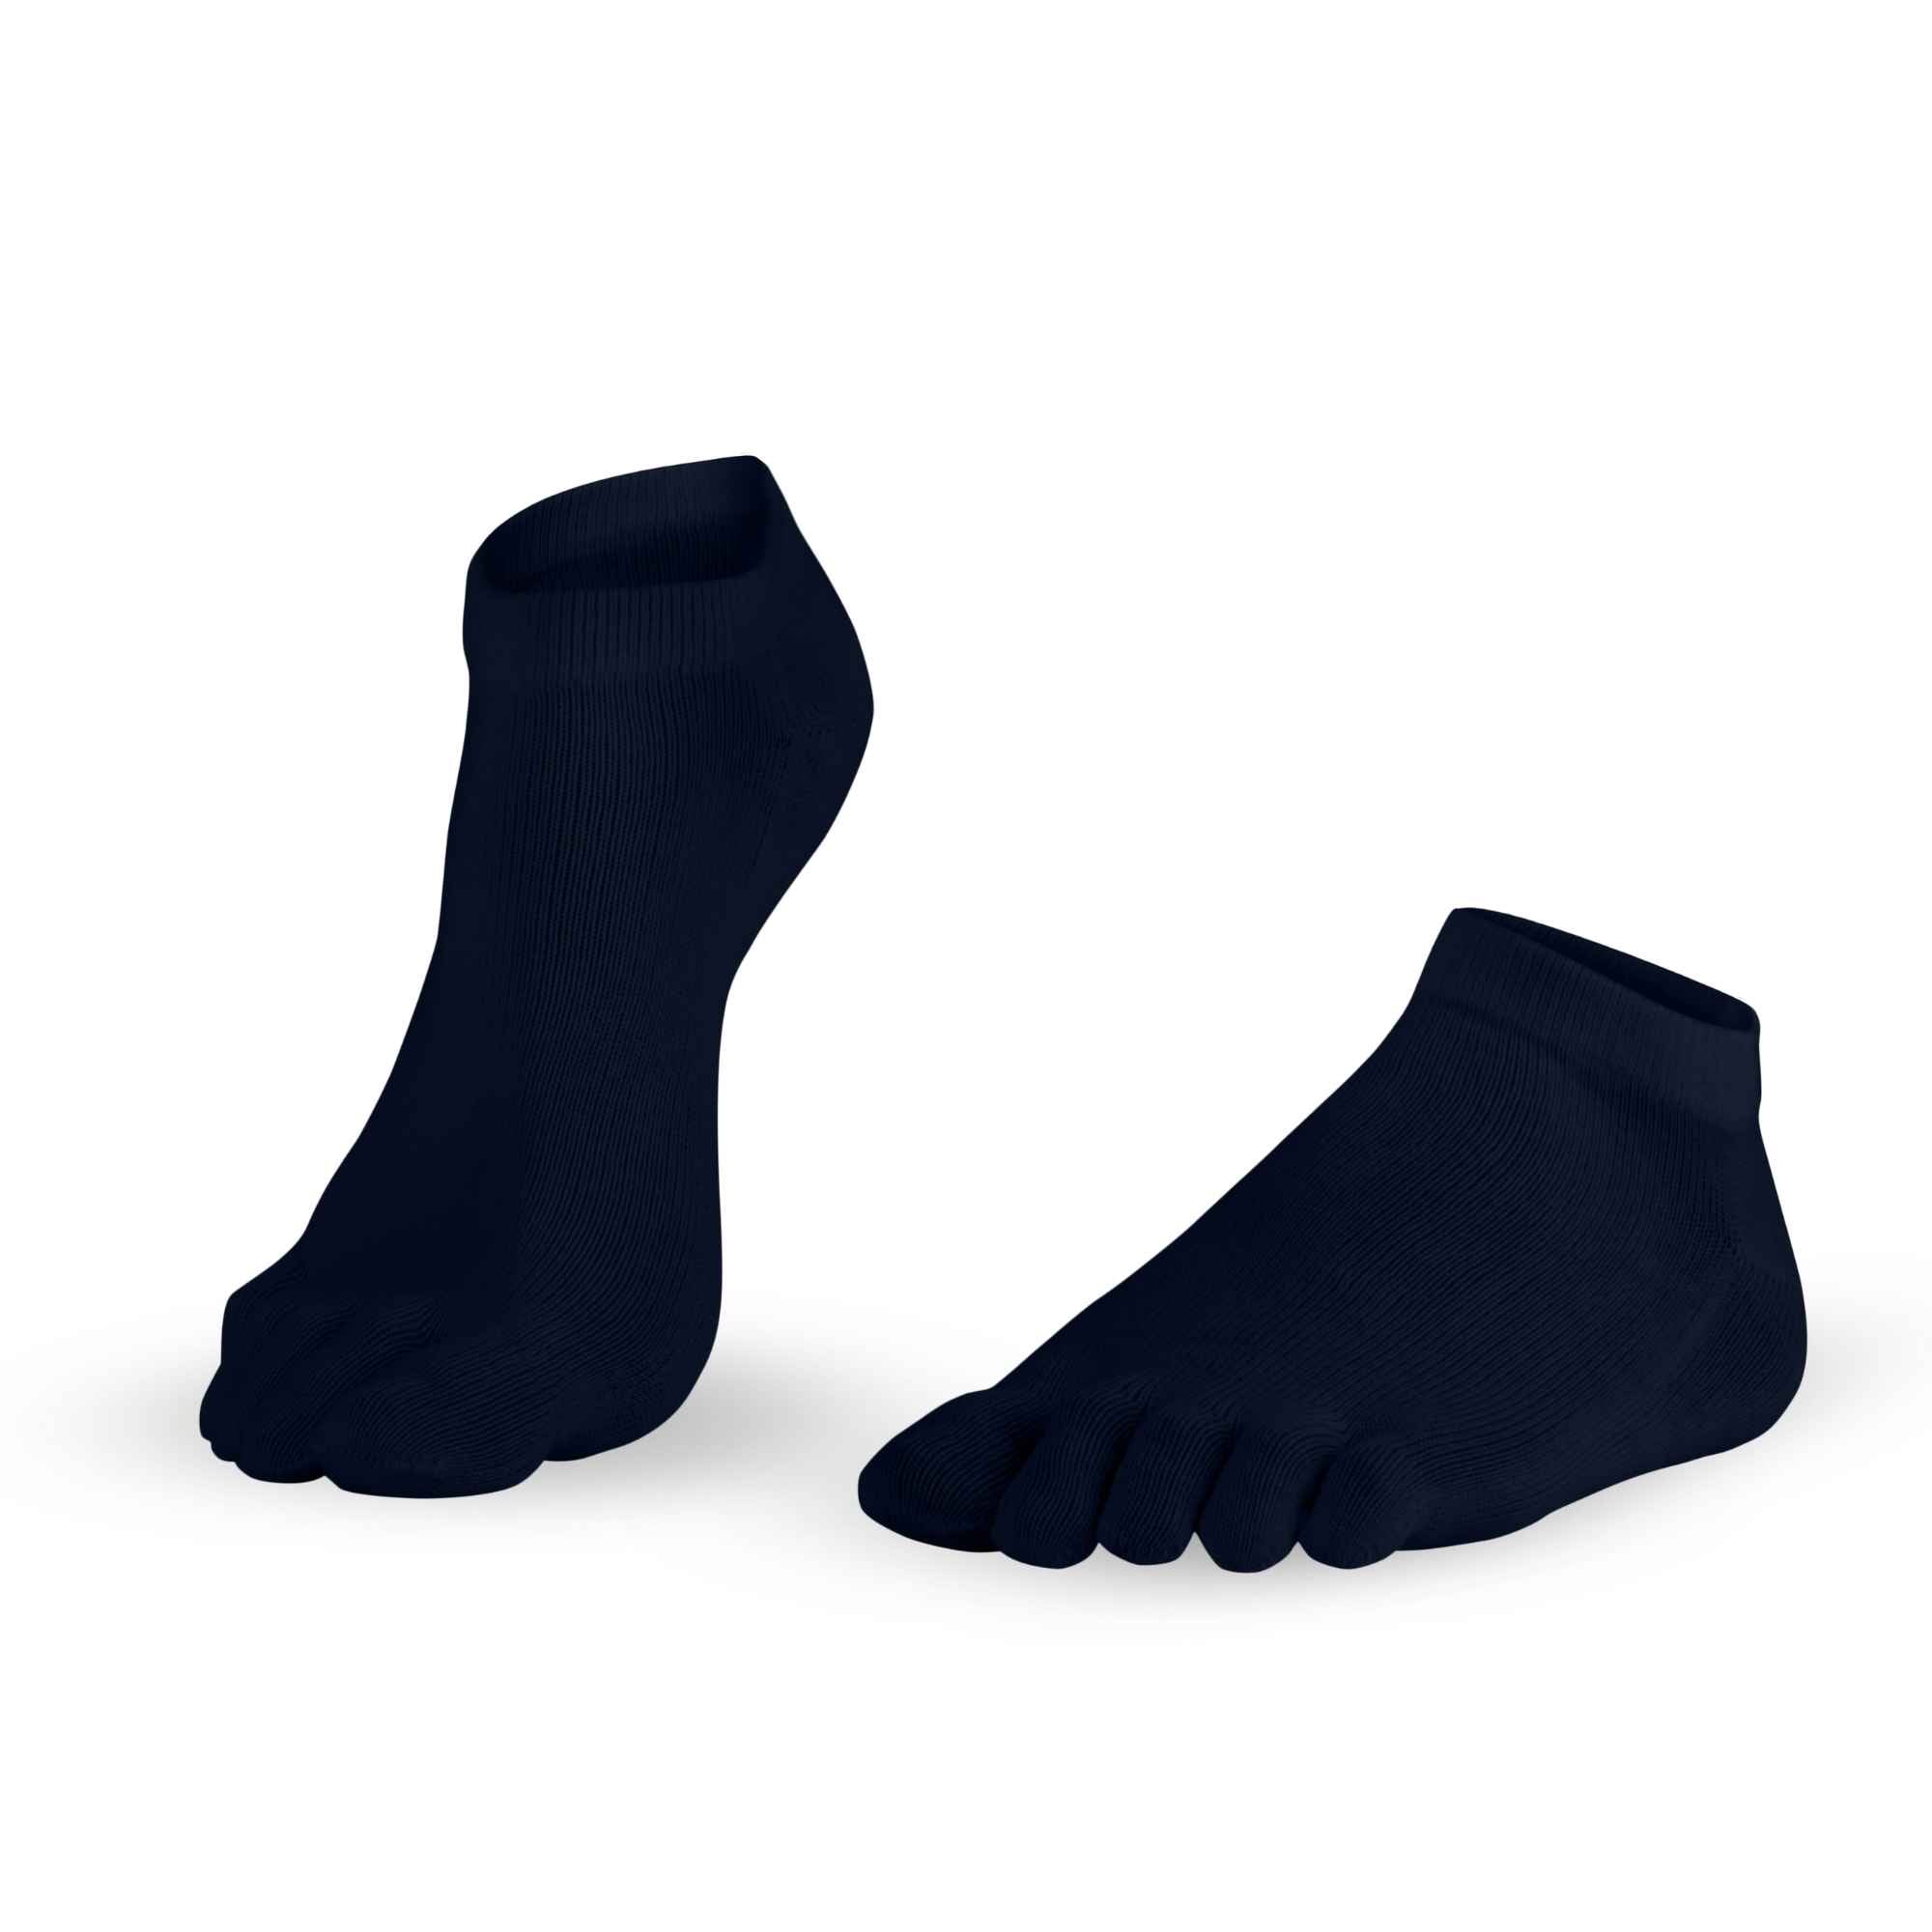 Diagrama para Dr. Foot Silver Protect Sneaker- calcetines antimicrobianos de Knitido, en azul marino